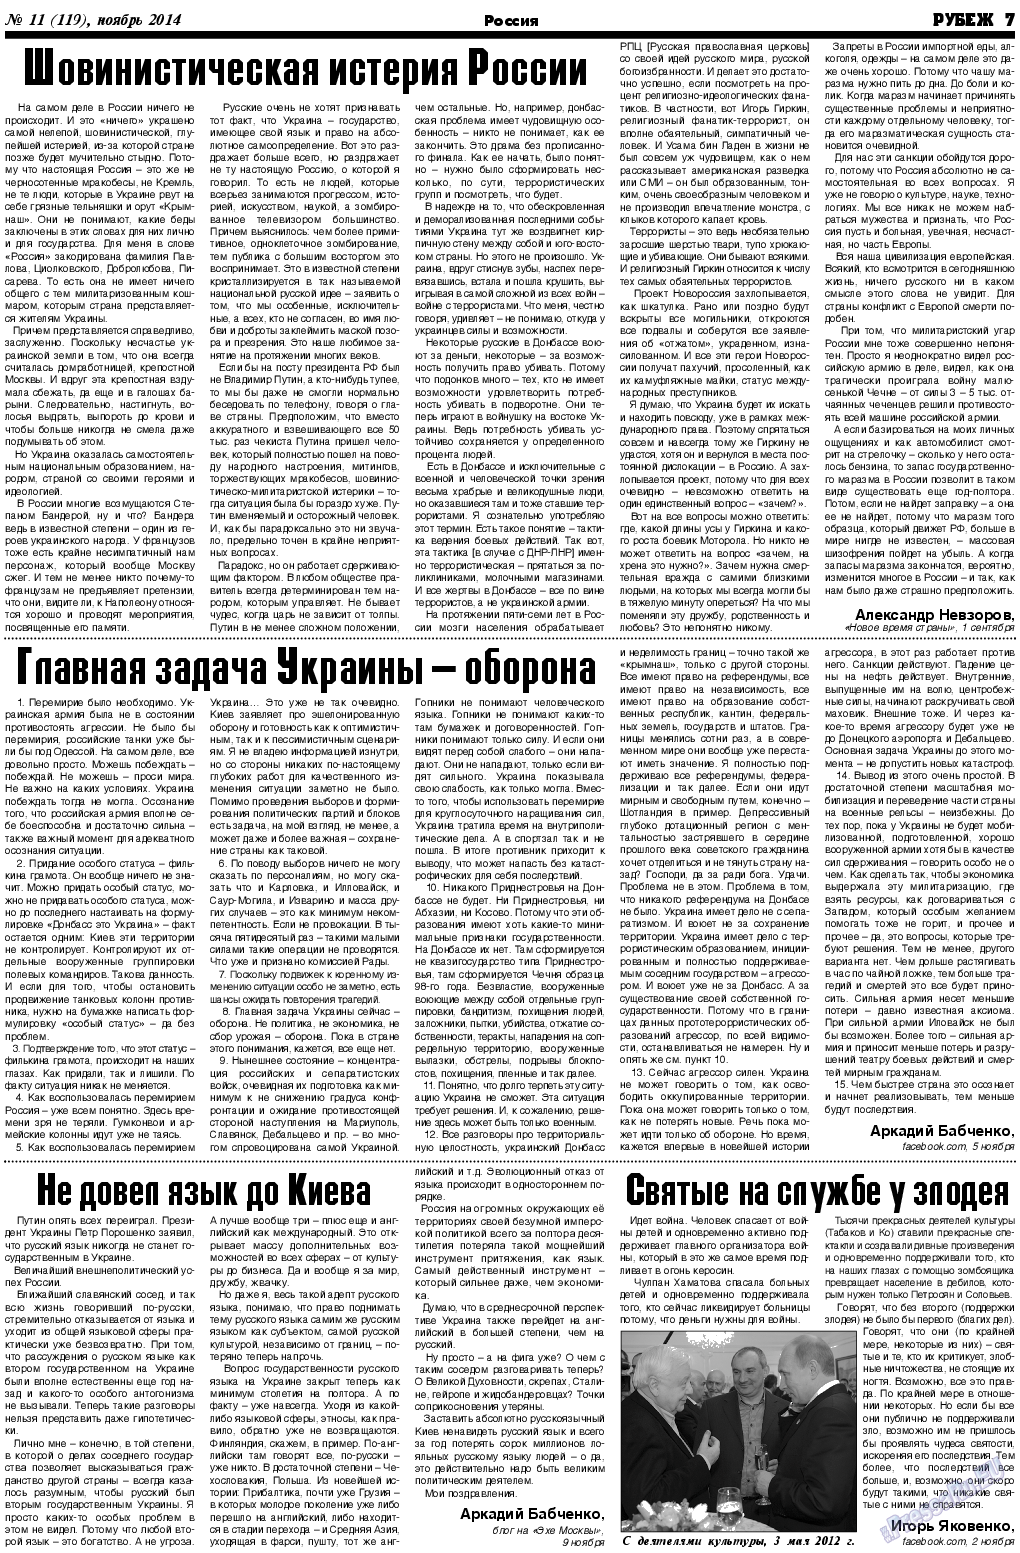 Рубеж (газета). 2014 год, номер 11, стр. 7